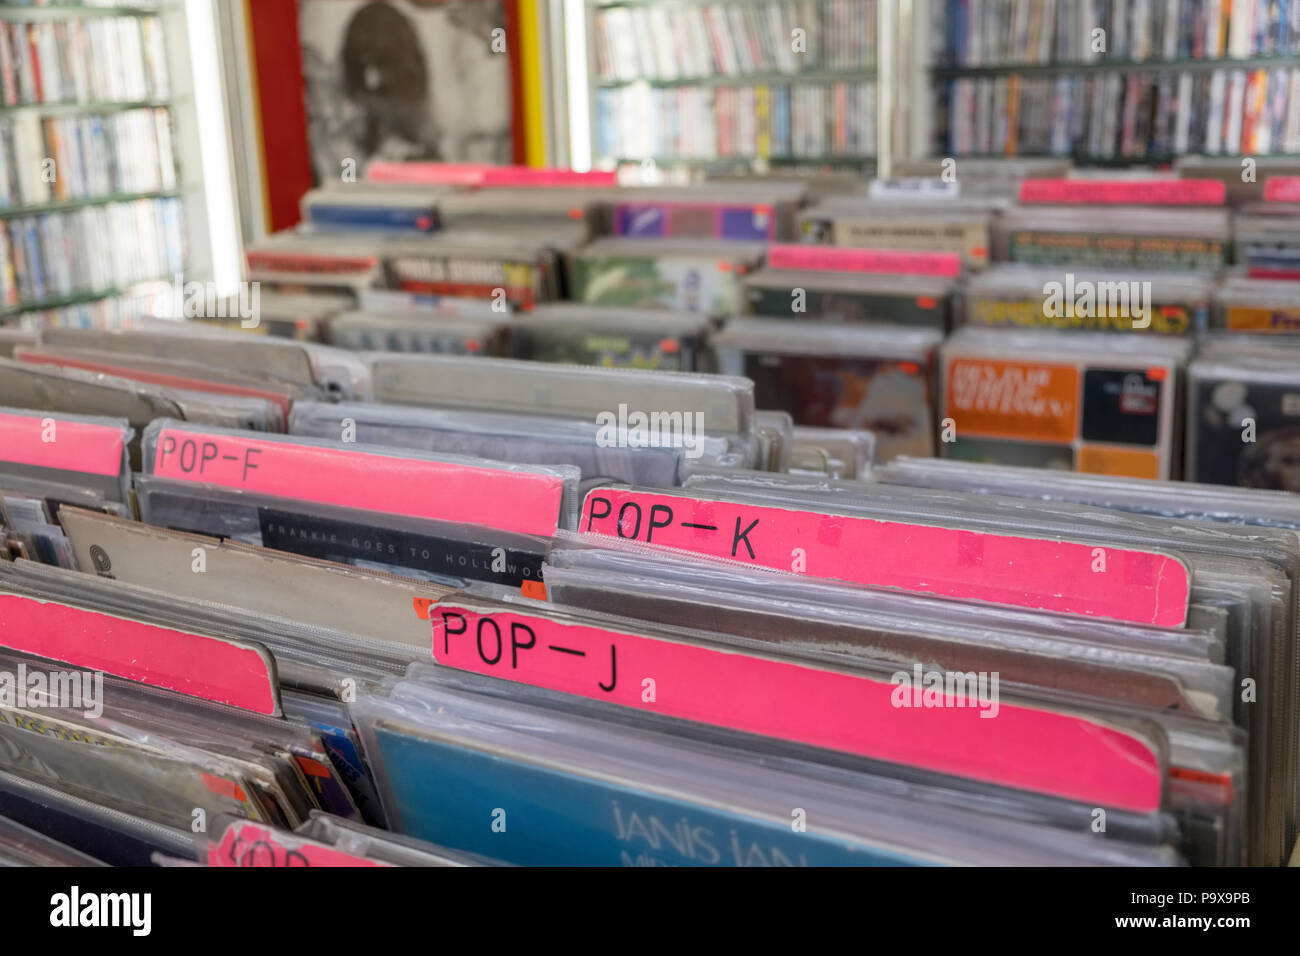 Les disques vinyles 33 tours et d'albums en racks dans un magasin de disques intérieur, England, UK Banque D'Images